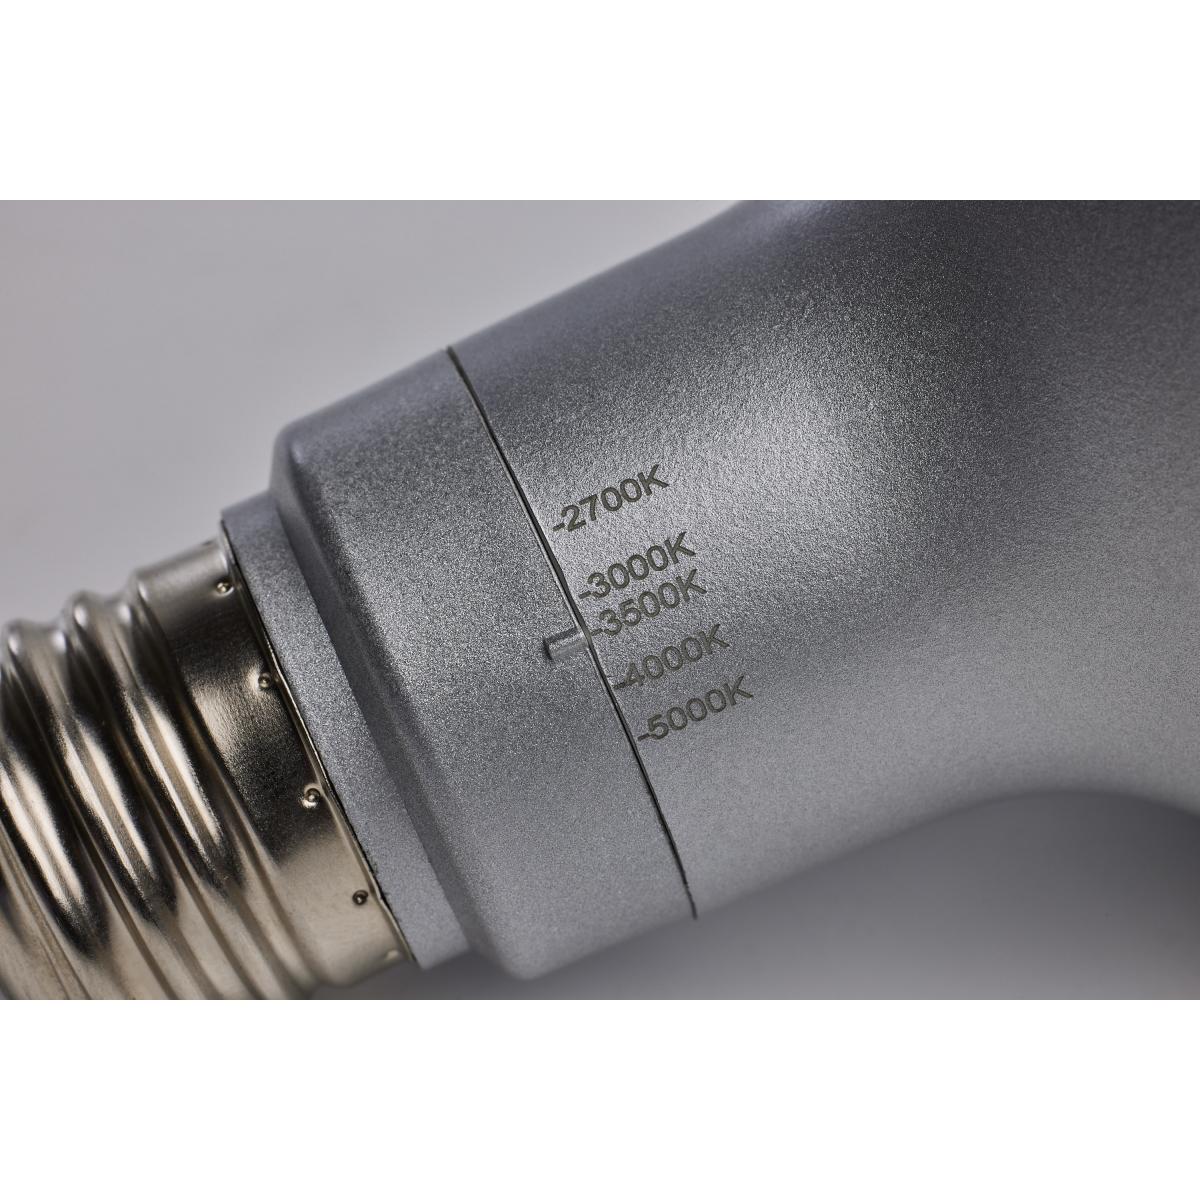 PAR30 Long Neck Reflector LED Bulb, 11 Watt, 1000 Lumens, Selectable CCT 2700K to 5000K, E26 Medium Base, 60 Deg. Wide Flood - Bees Lighting